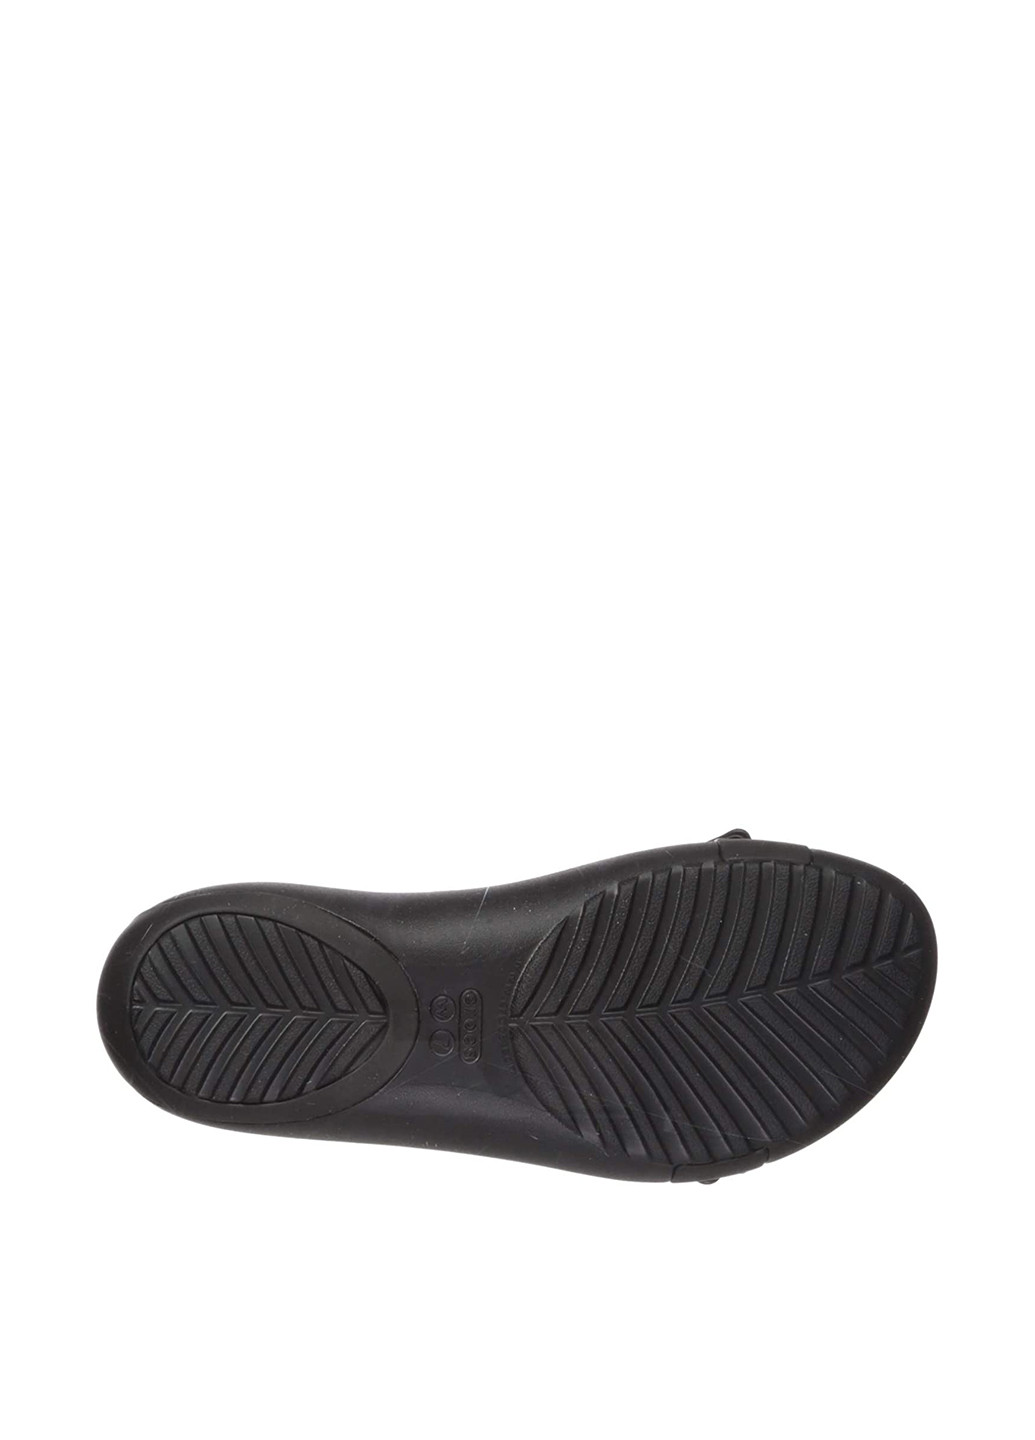 Черные пляжные сандалии Crocs Без шнурков